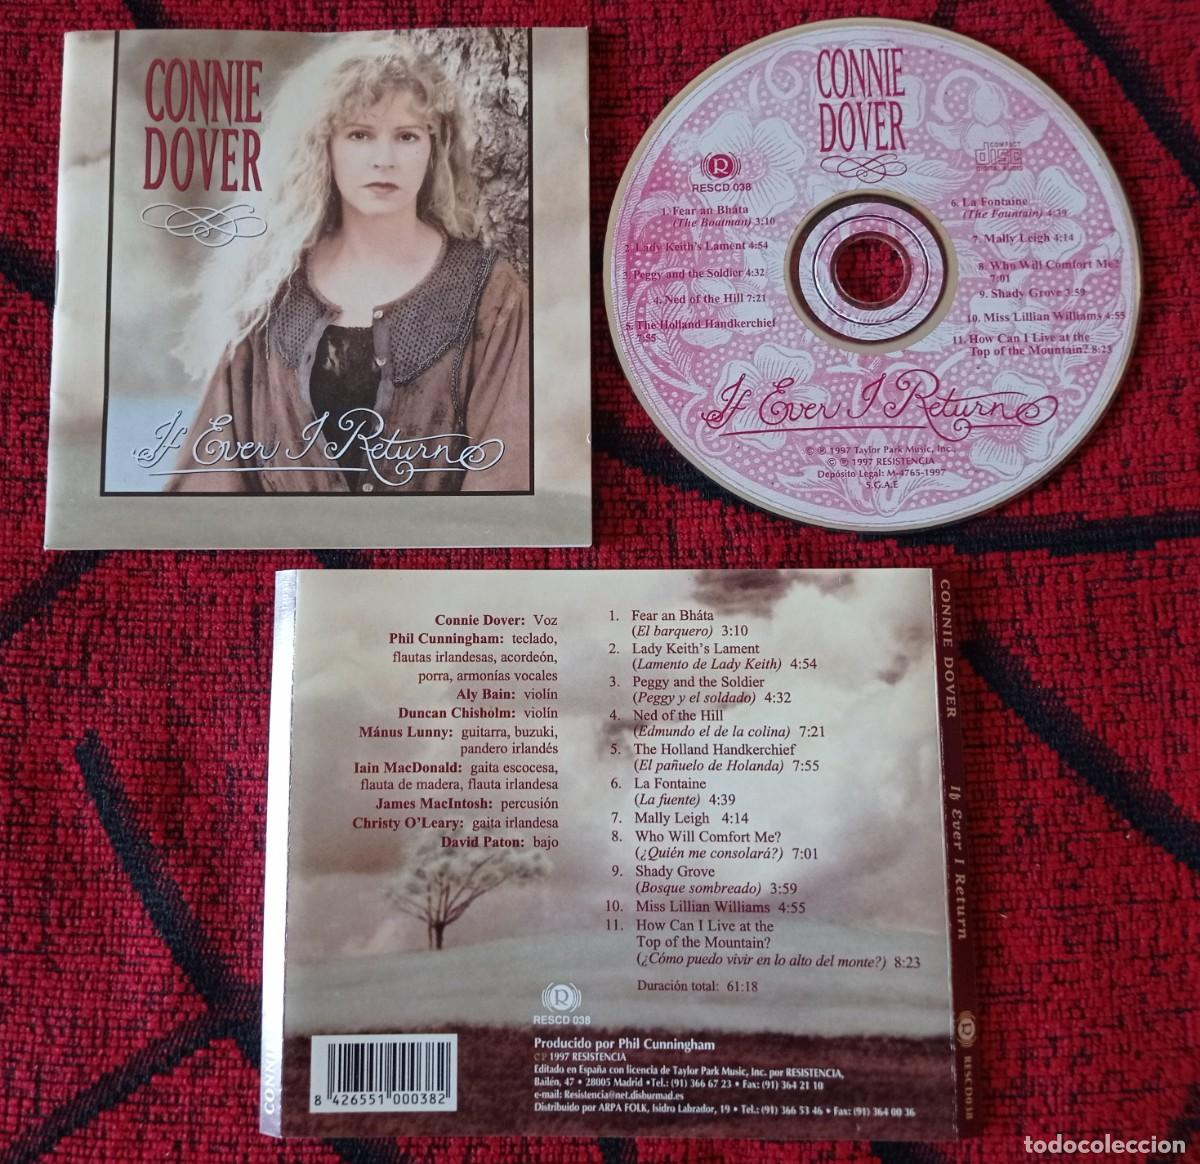 connie dover ** if ever i return ** cd 1997 - Comprar CD de Música